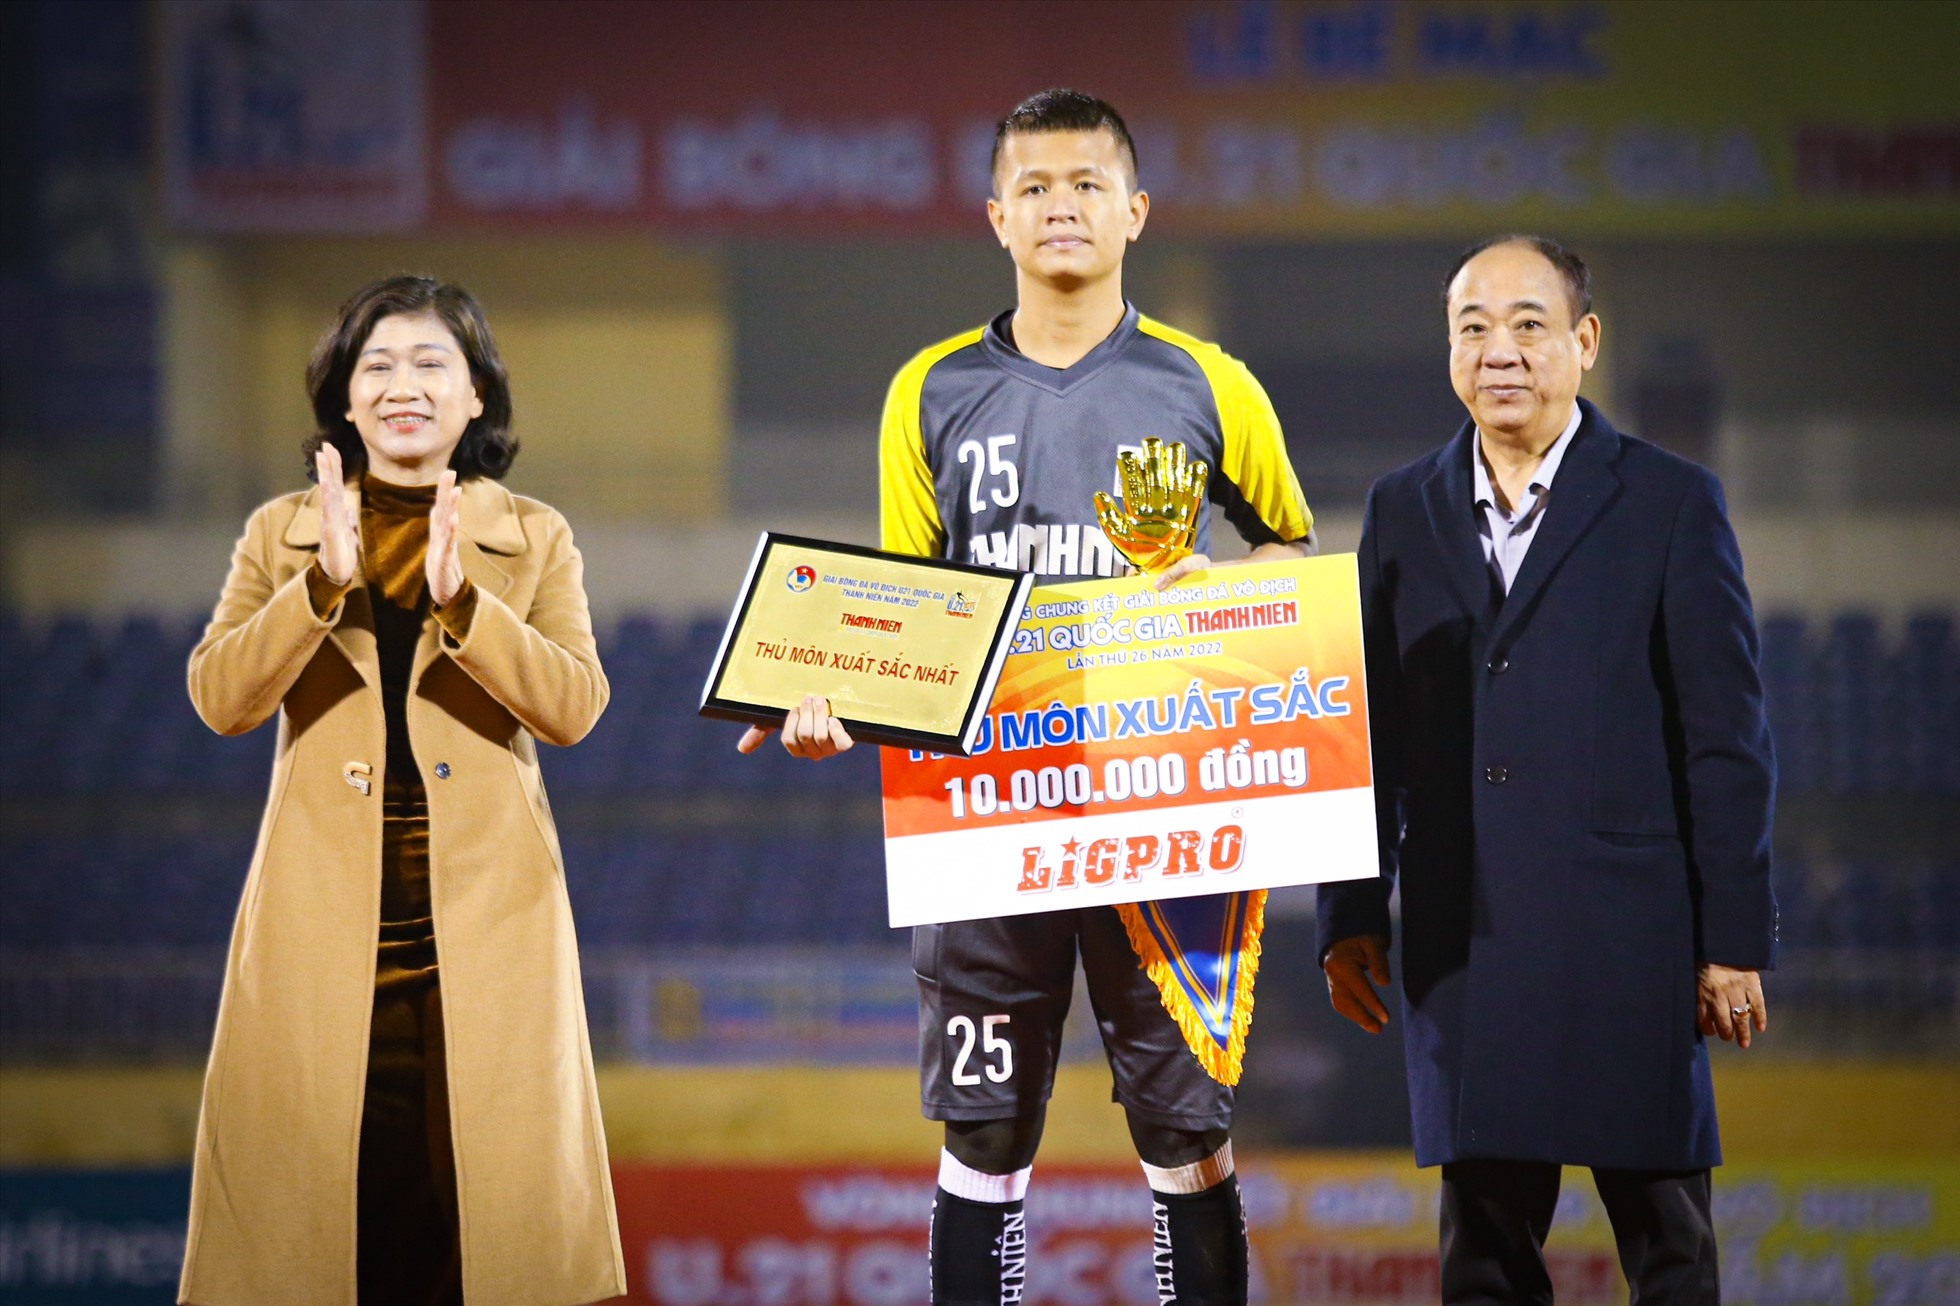 Giải thủ môn xuất sắc được trao cho Phan Văn Đông Điền của U21 Bình Dương.